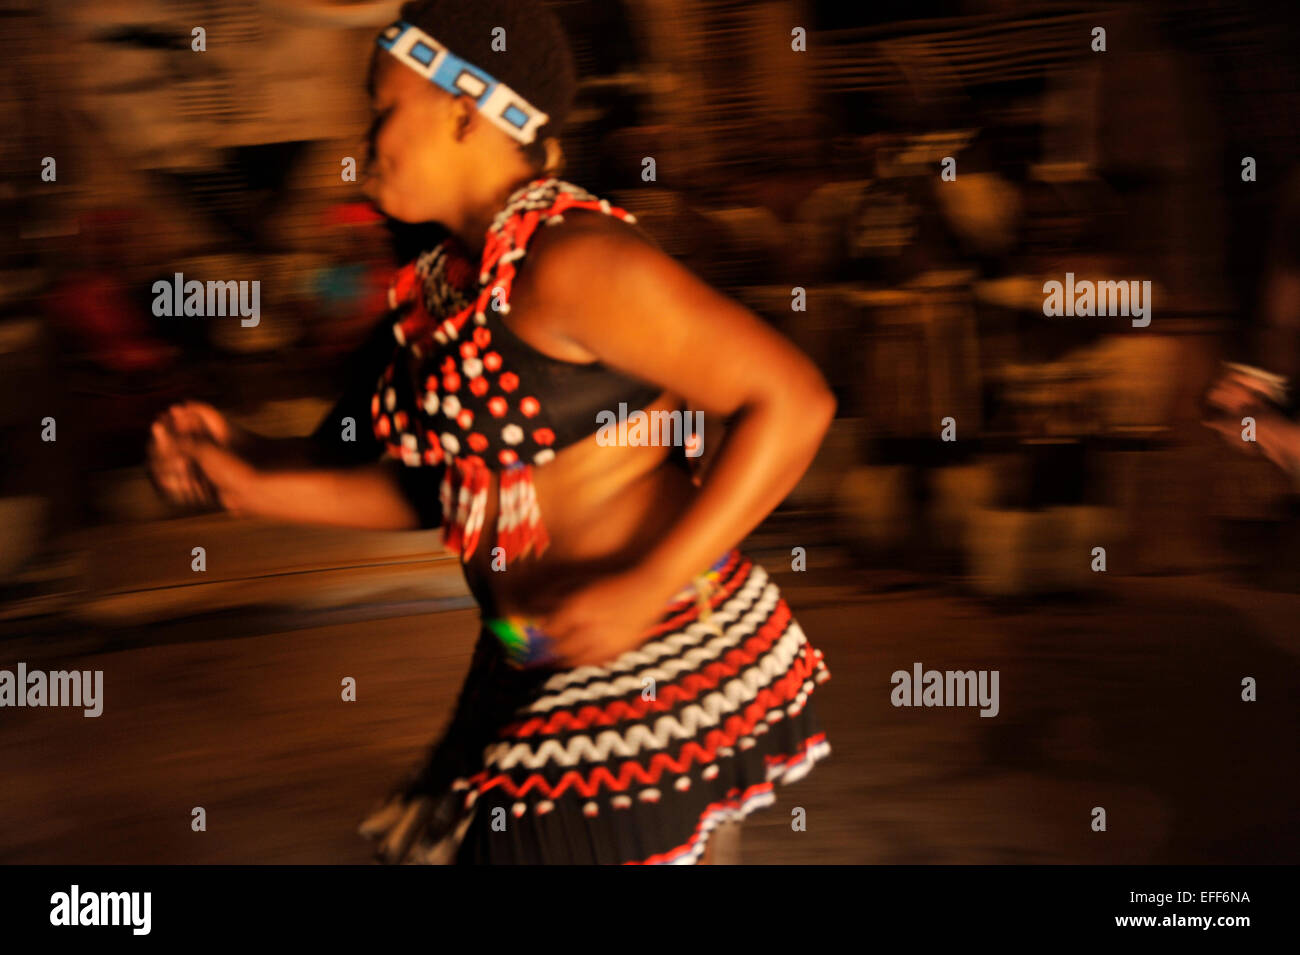 Menschen, Erwachsene Frau, Kultur, Ethnie, KwaZulu-Natal, Südafrika, Motion Blur, Zulu-Tänzerin, traditioneller Tanz, Shakaland Themendorf, Aktion Stockfoto